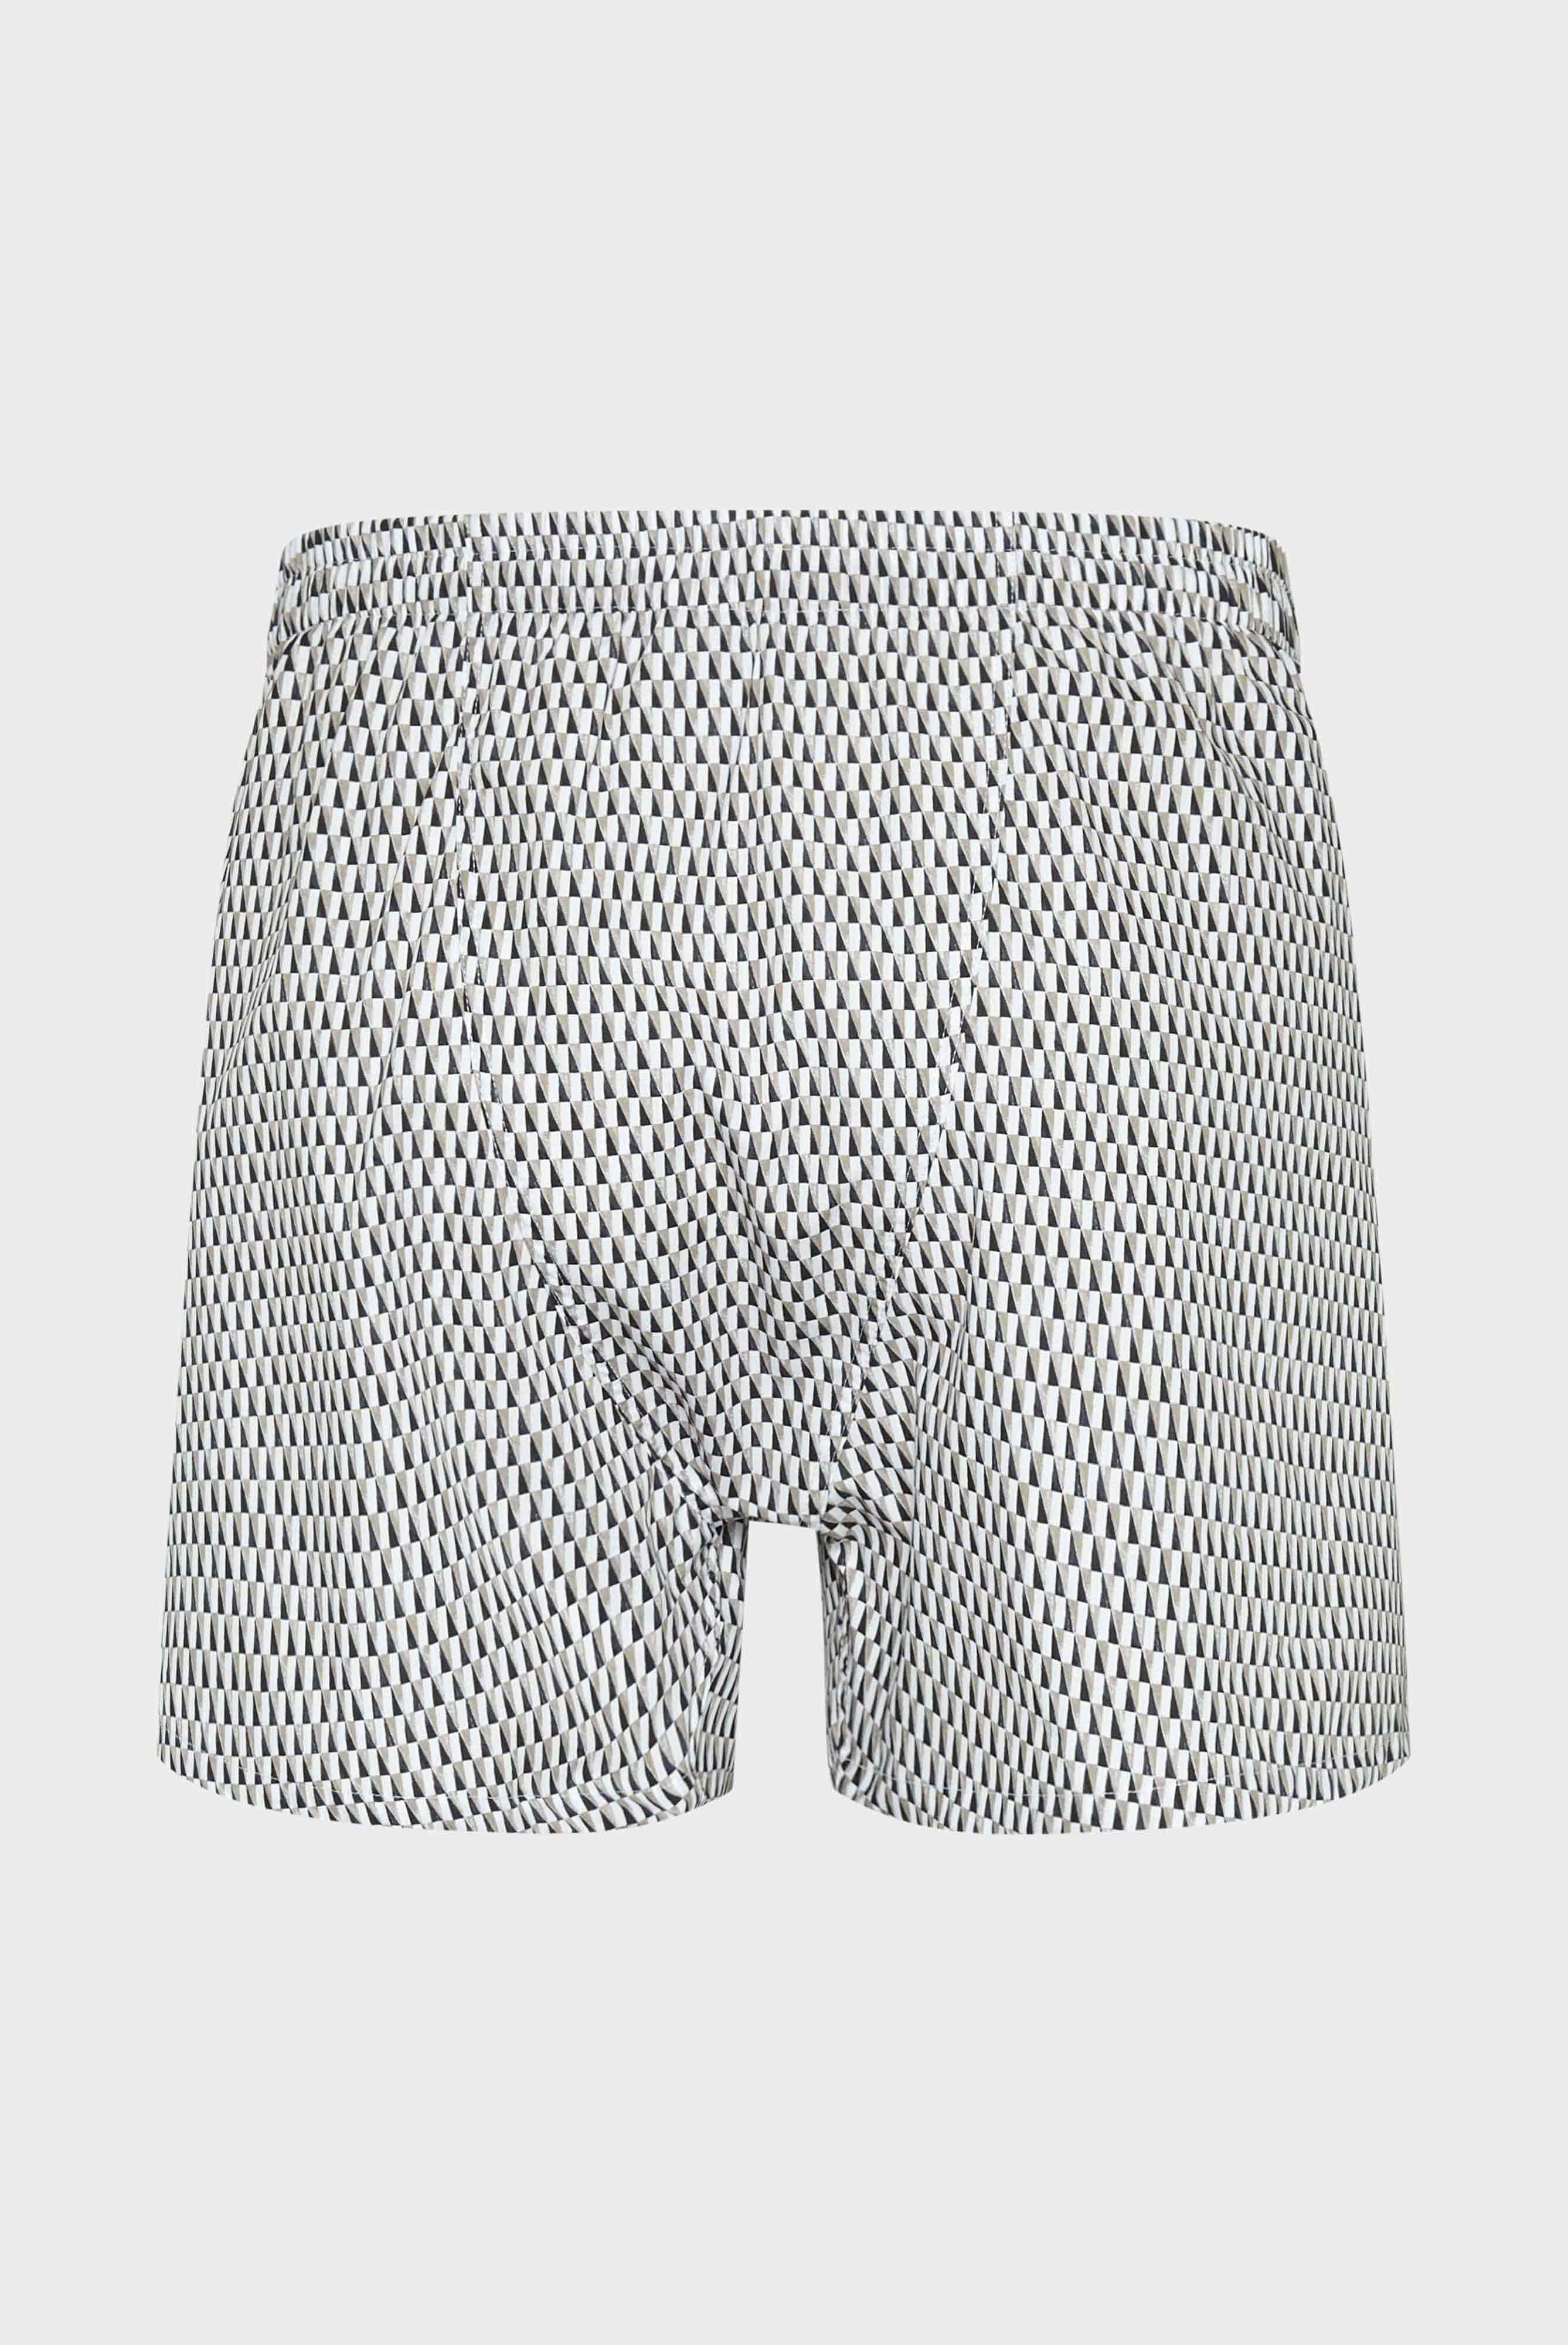 Underwear+Boxer shorts in cotton+91.1100..171977.137.46